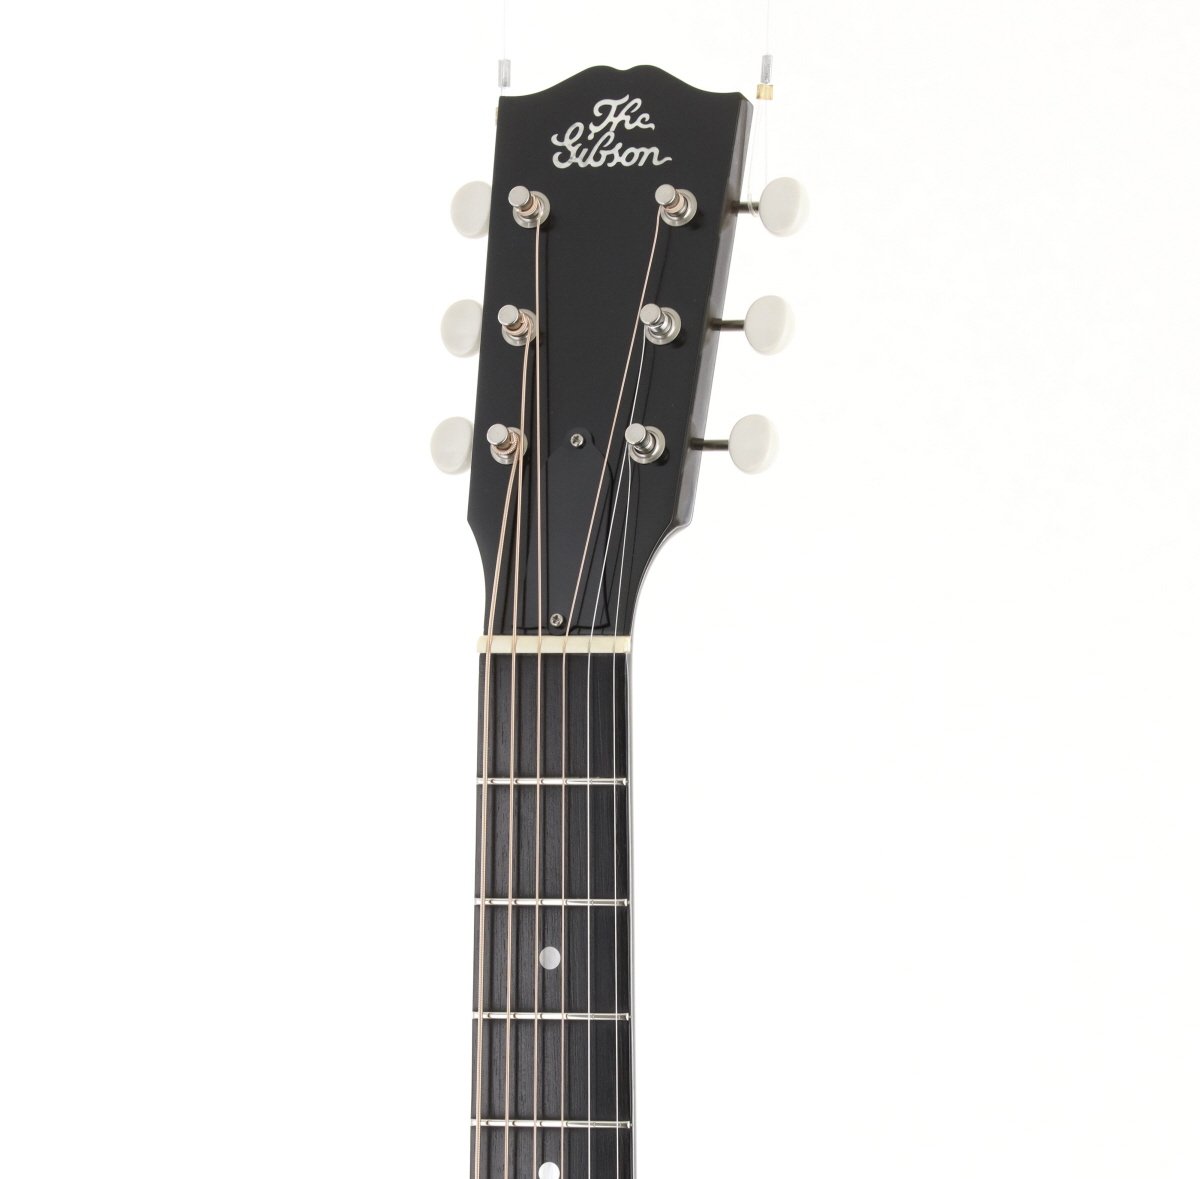 [SN 11641003] USED Gibson / Robert Johnson L-1 Vintage Sunburst [03]